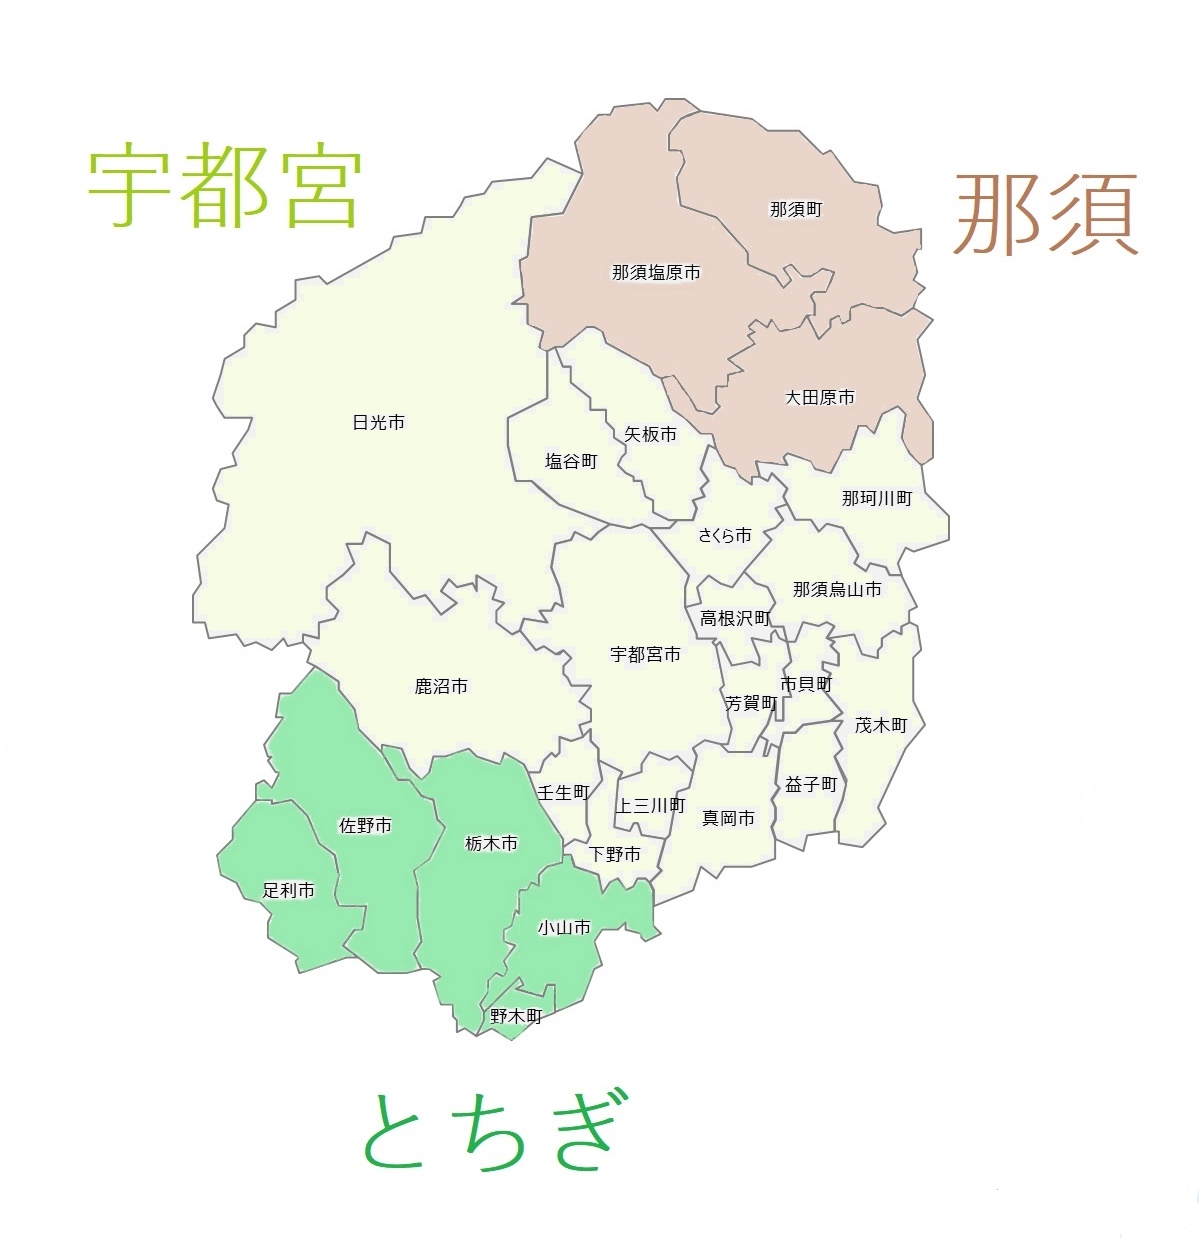 栃木県のナンバープレート地域区分2020